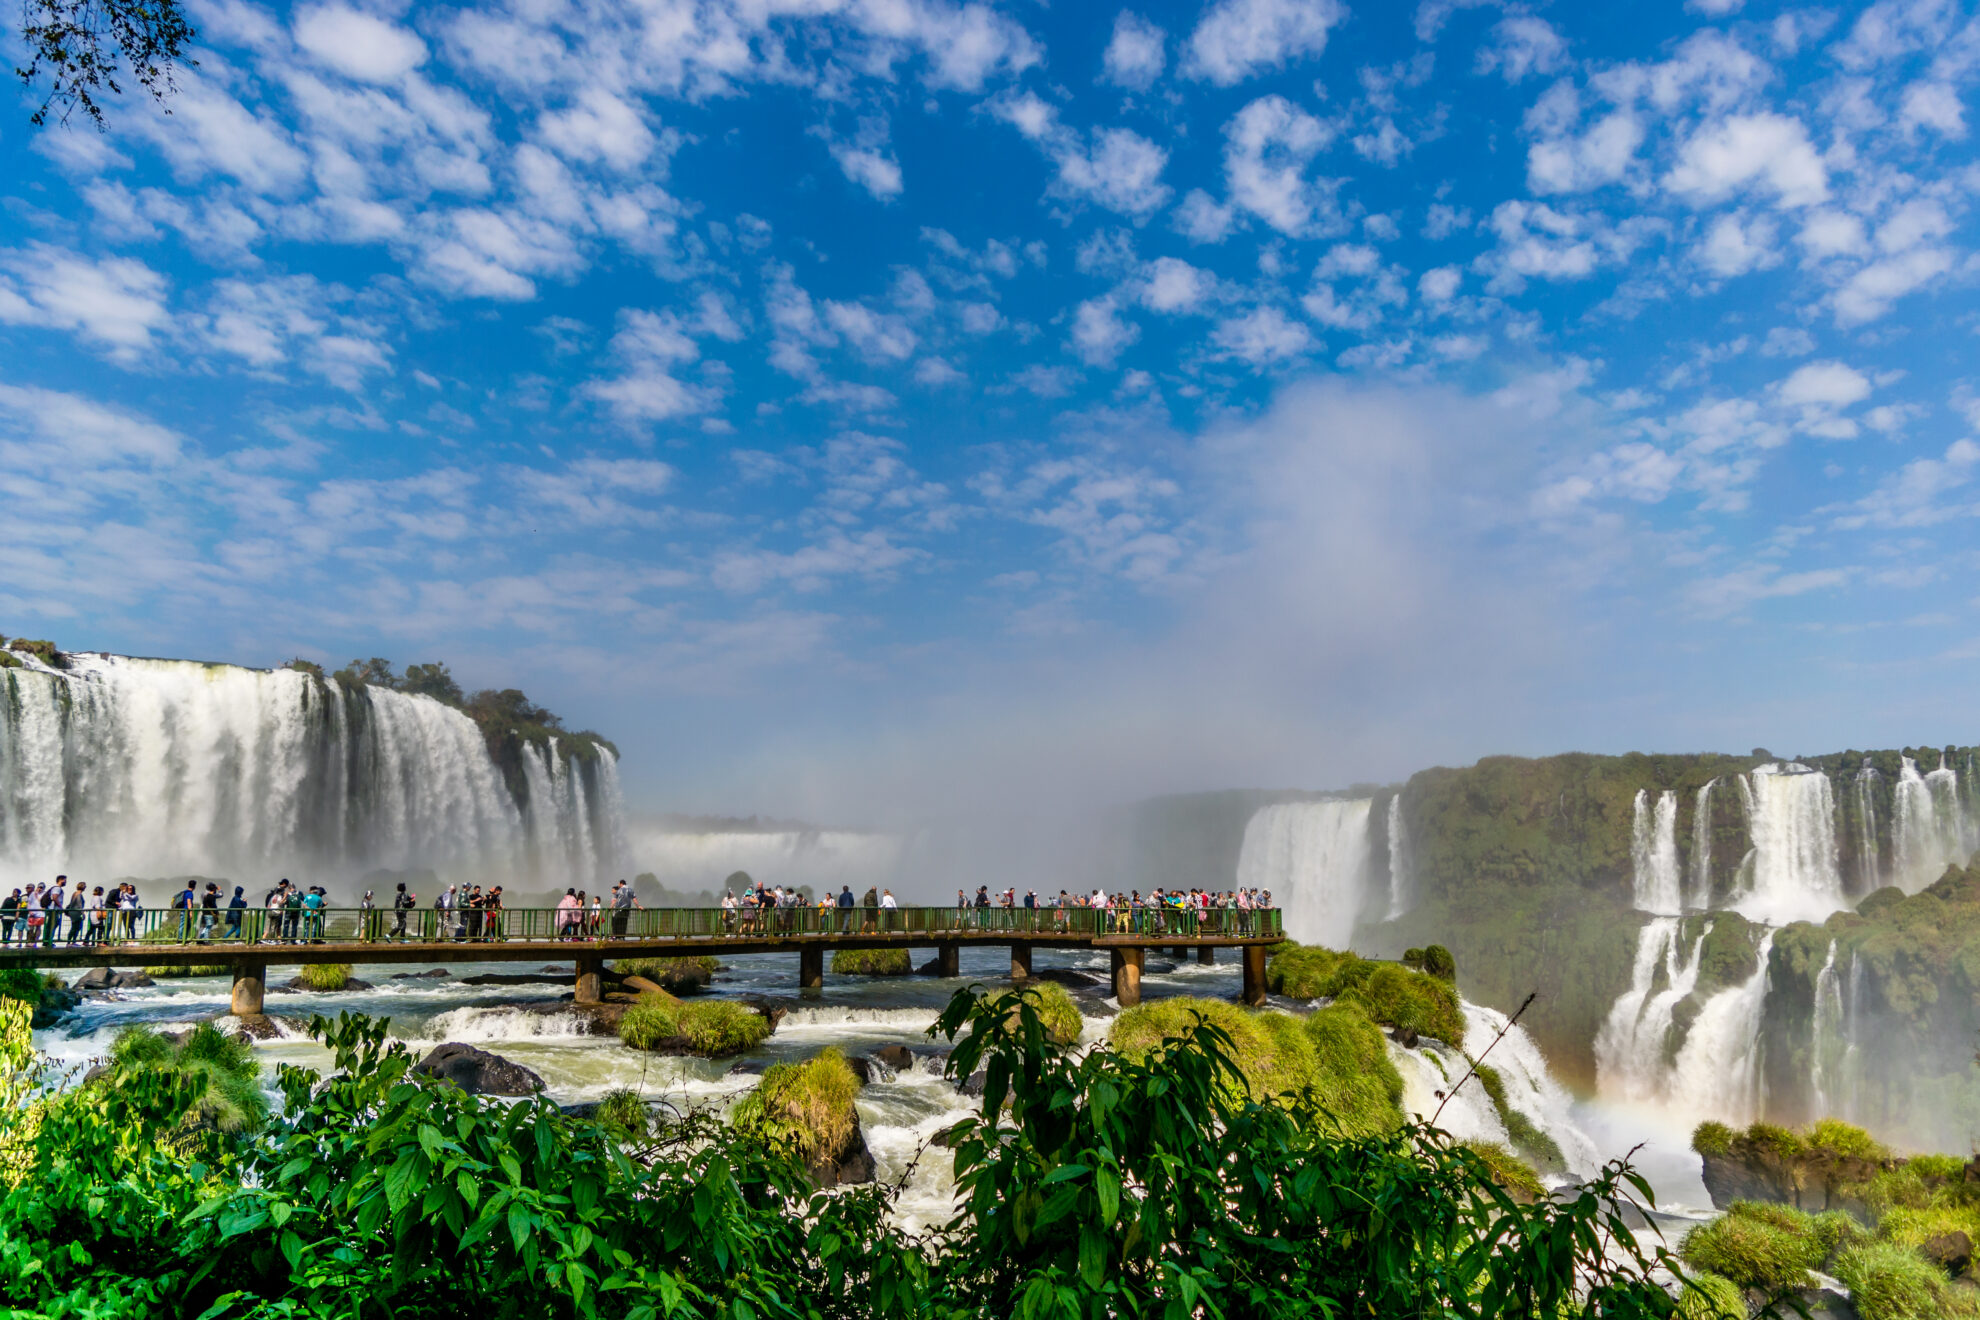 Turismo em parques nacionais: saiba mais sobre a vasta diversidade de experiências no Brasil